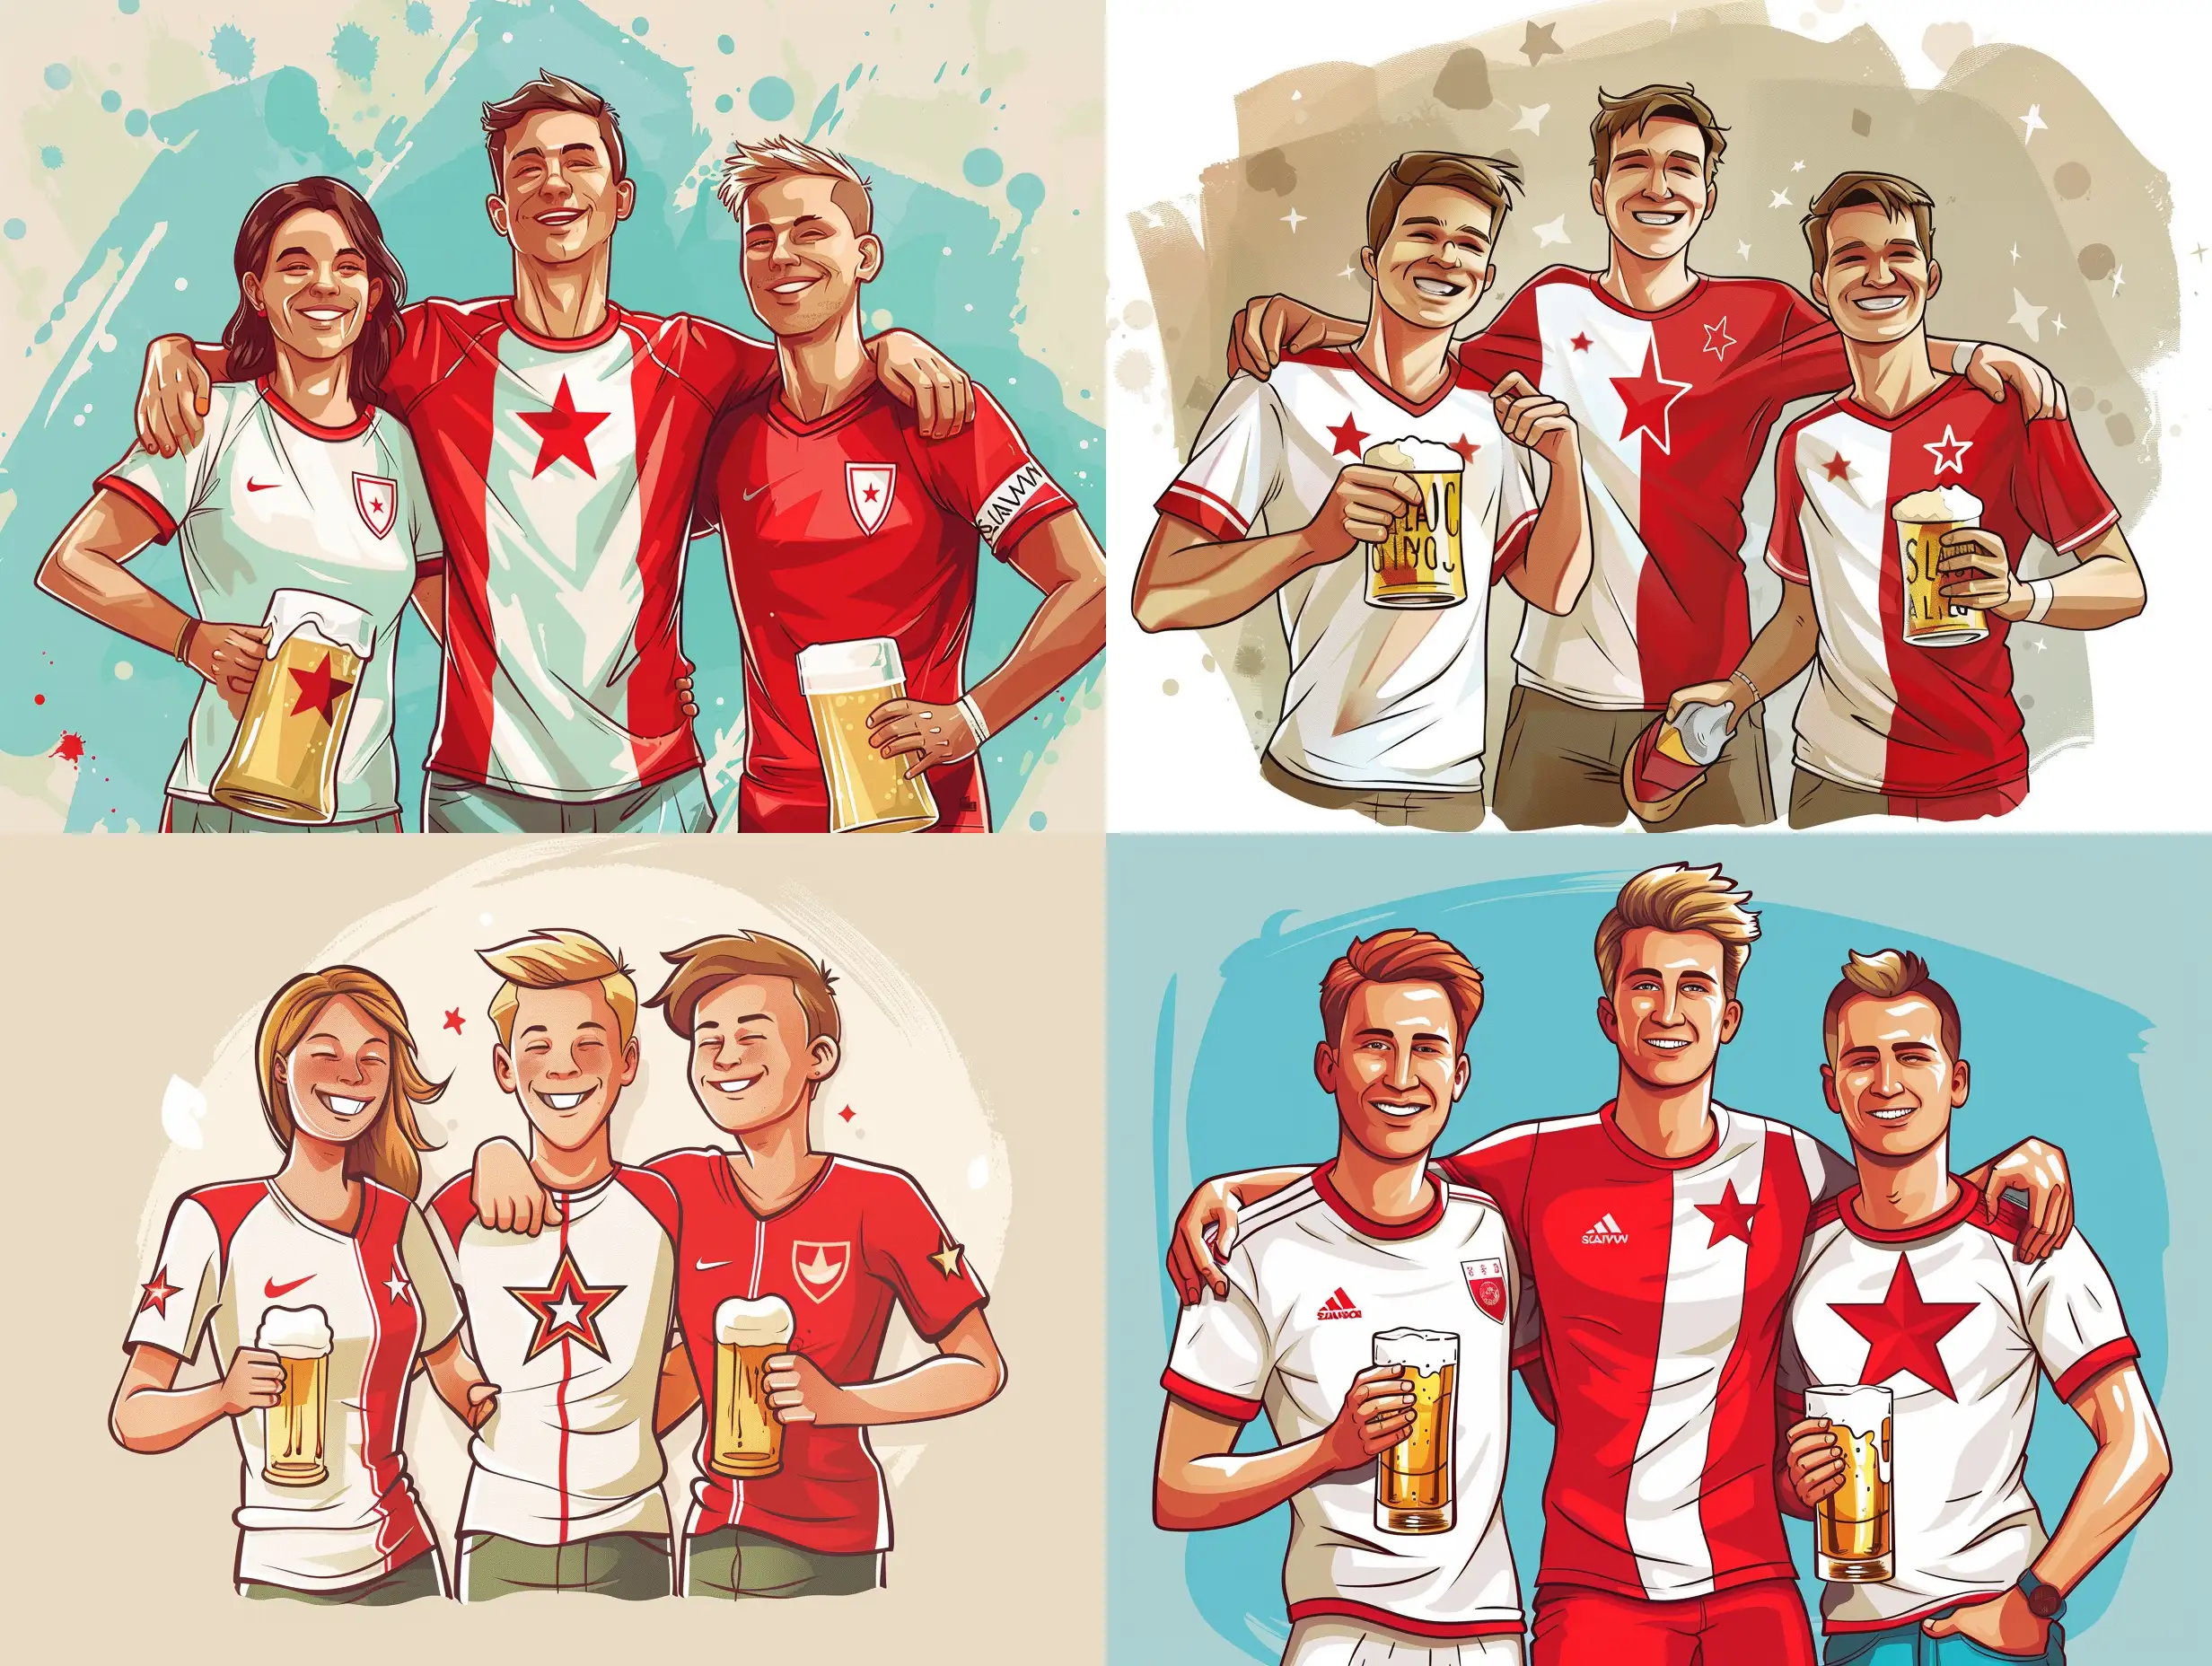 Cartoon of three fans of football club Slavia Prague with beer, fanoušci mají červenobílé dresy svisle rozpůlené, levá strana bílá, pravá červená. V bílé straně dresu je na místě srdce pěticípá červená hvězda postavená na jeden cíp